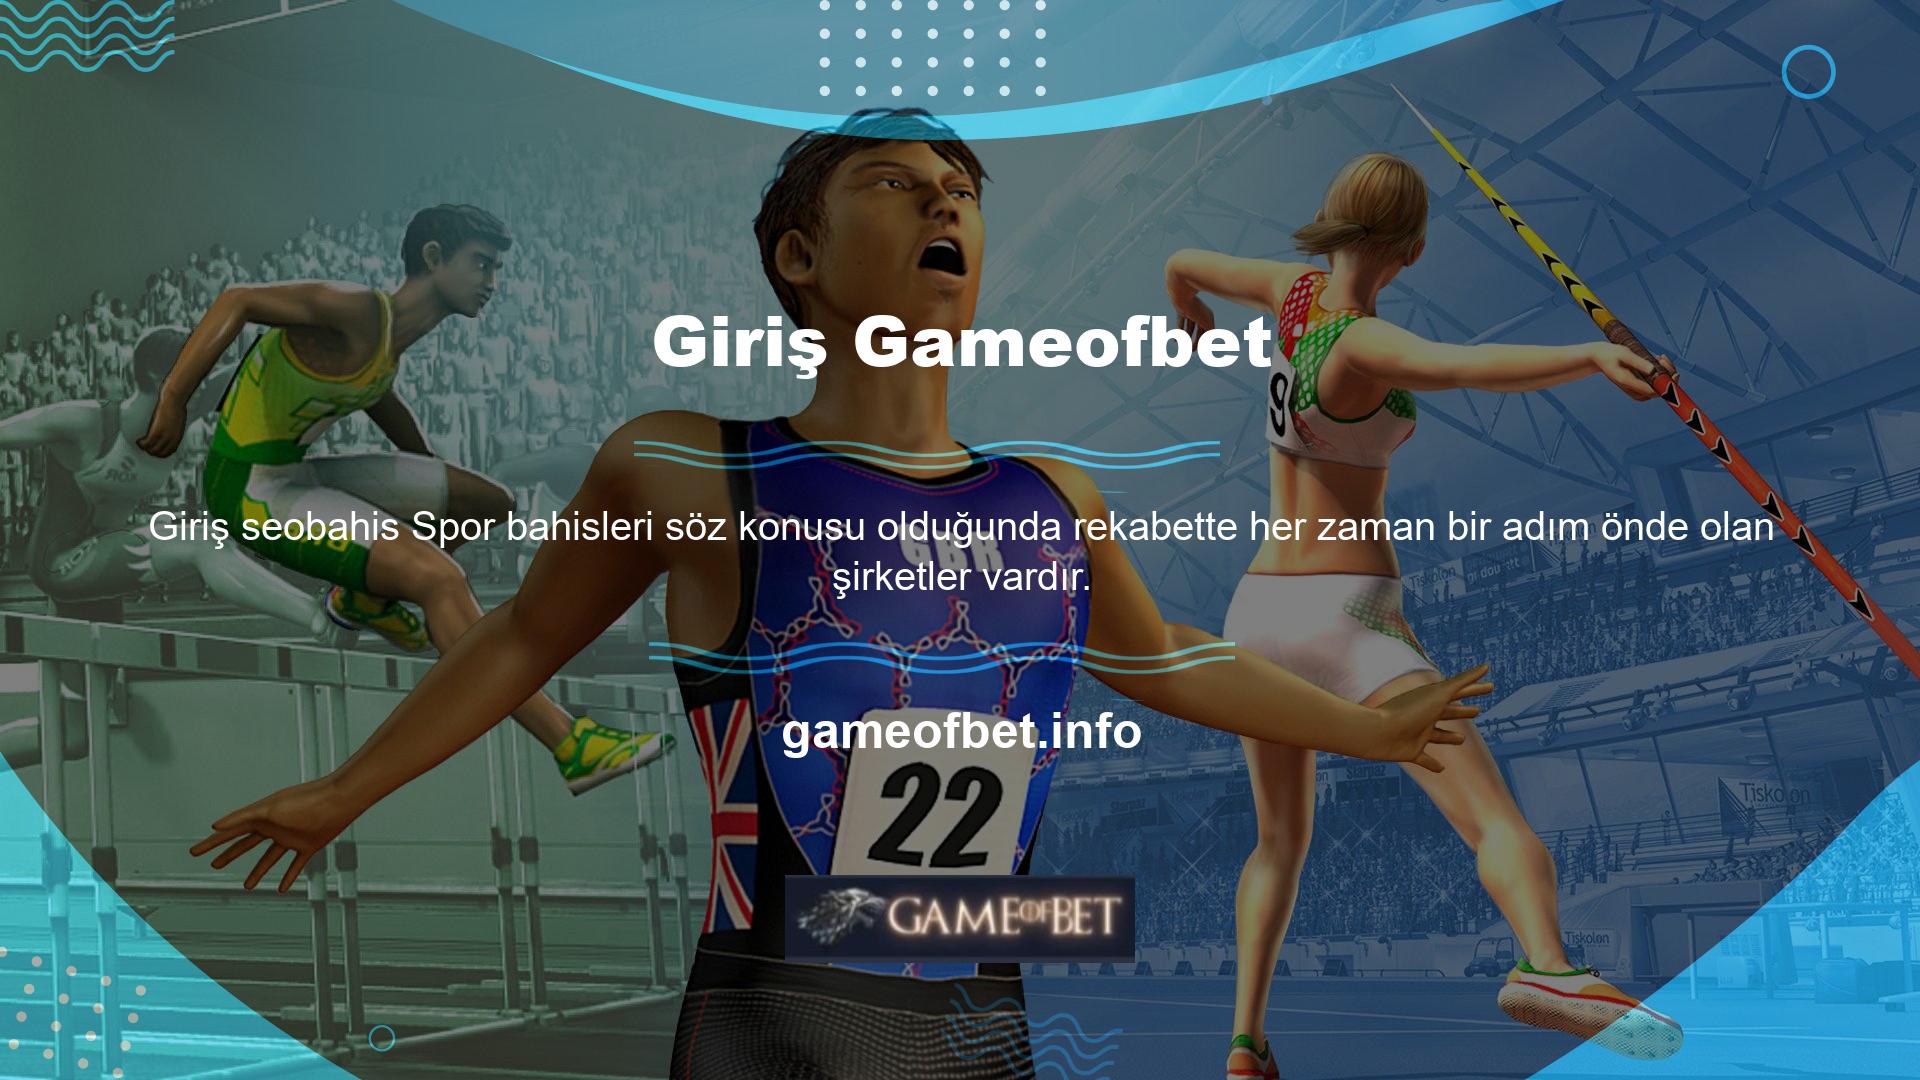 Gameofbet faaliyet göstermektedir ve çevrimiçi spor bahisleri endüstrisinde öncüdür